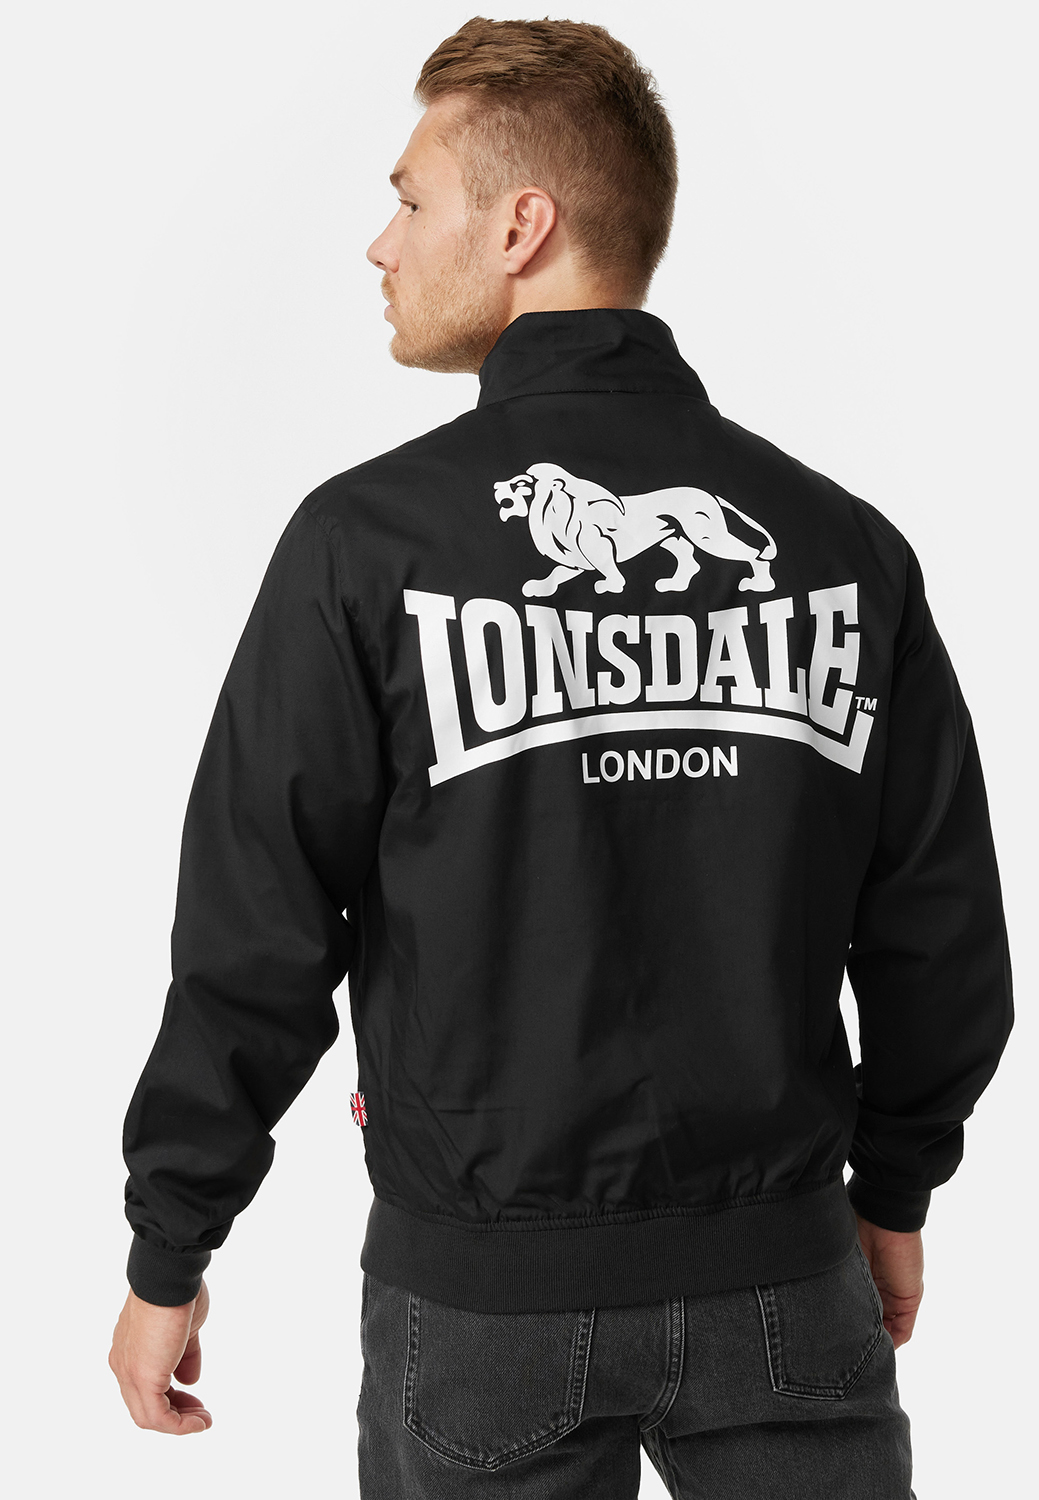 LONSDALE Jacken günstig kaufen